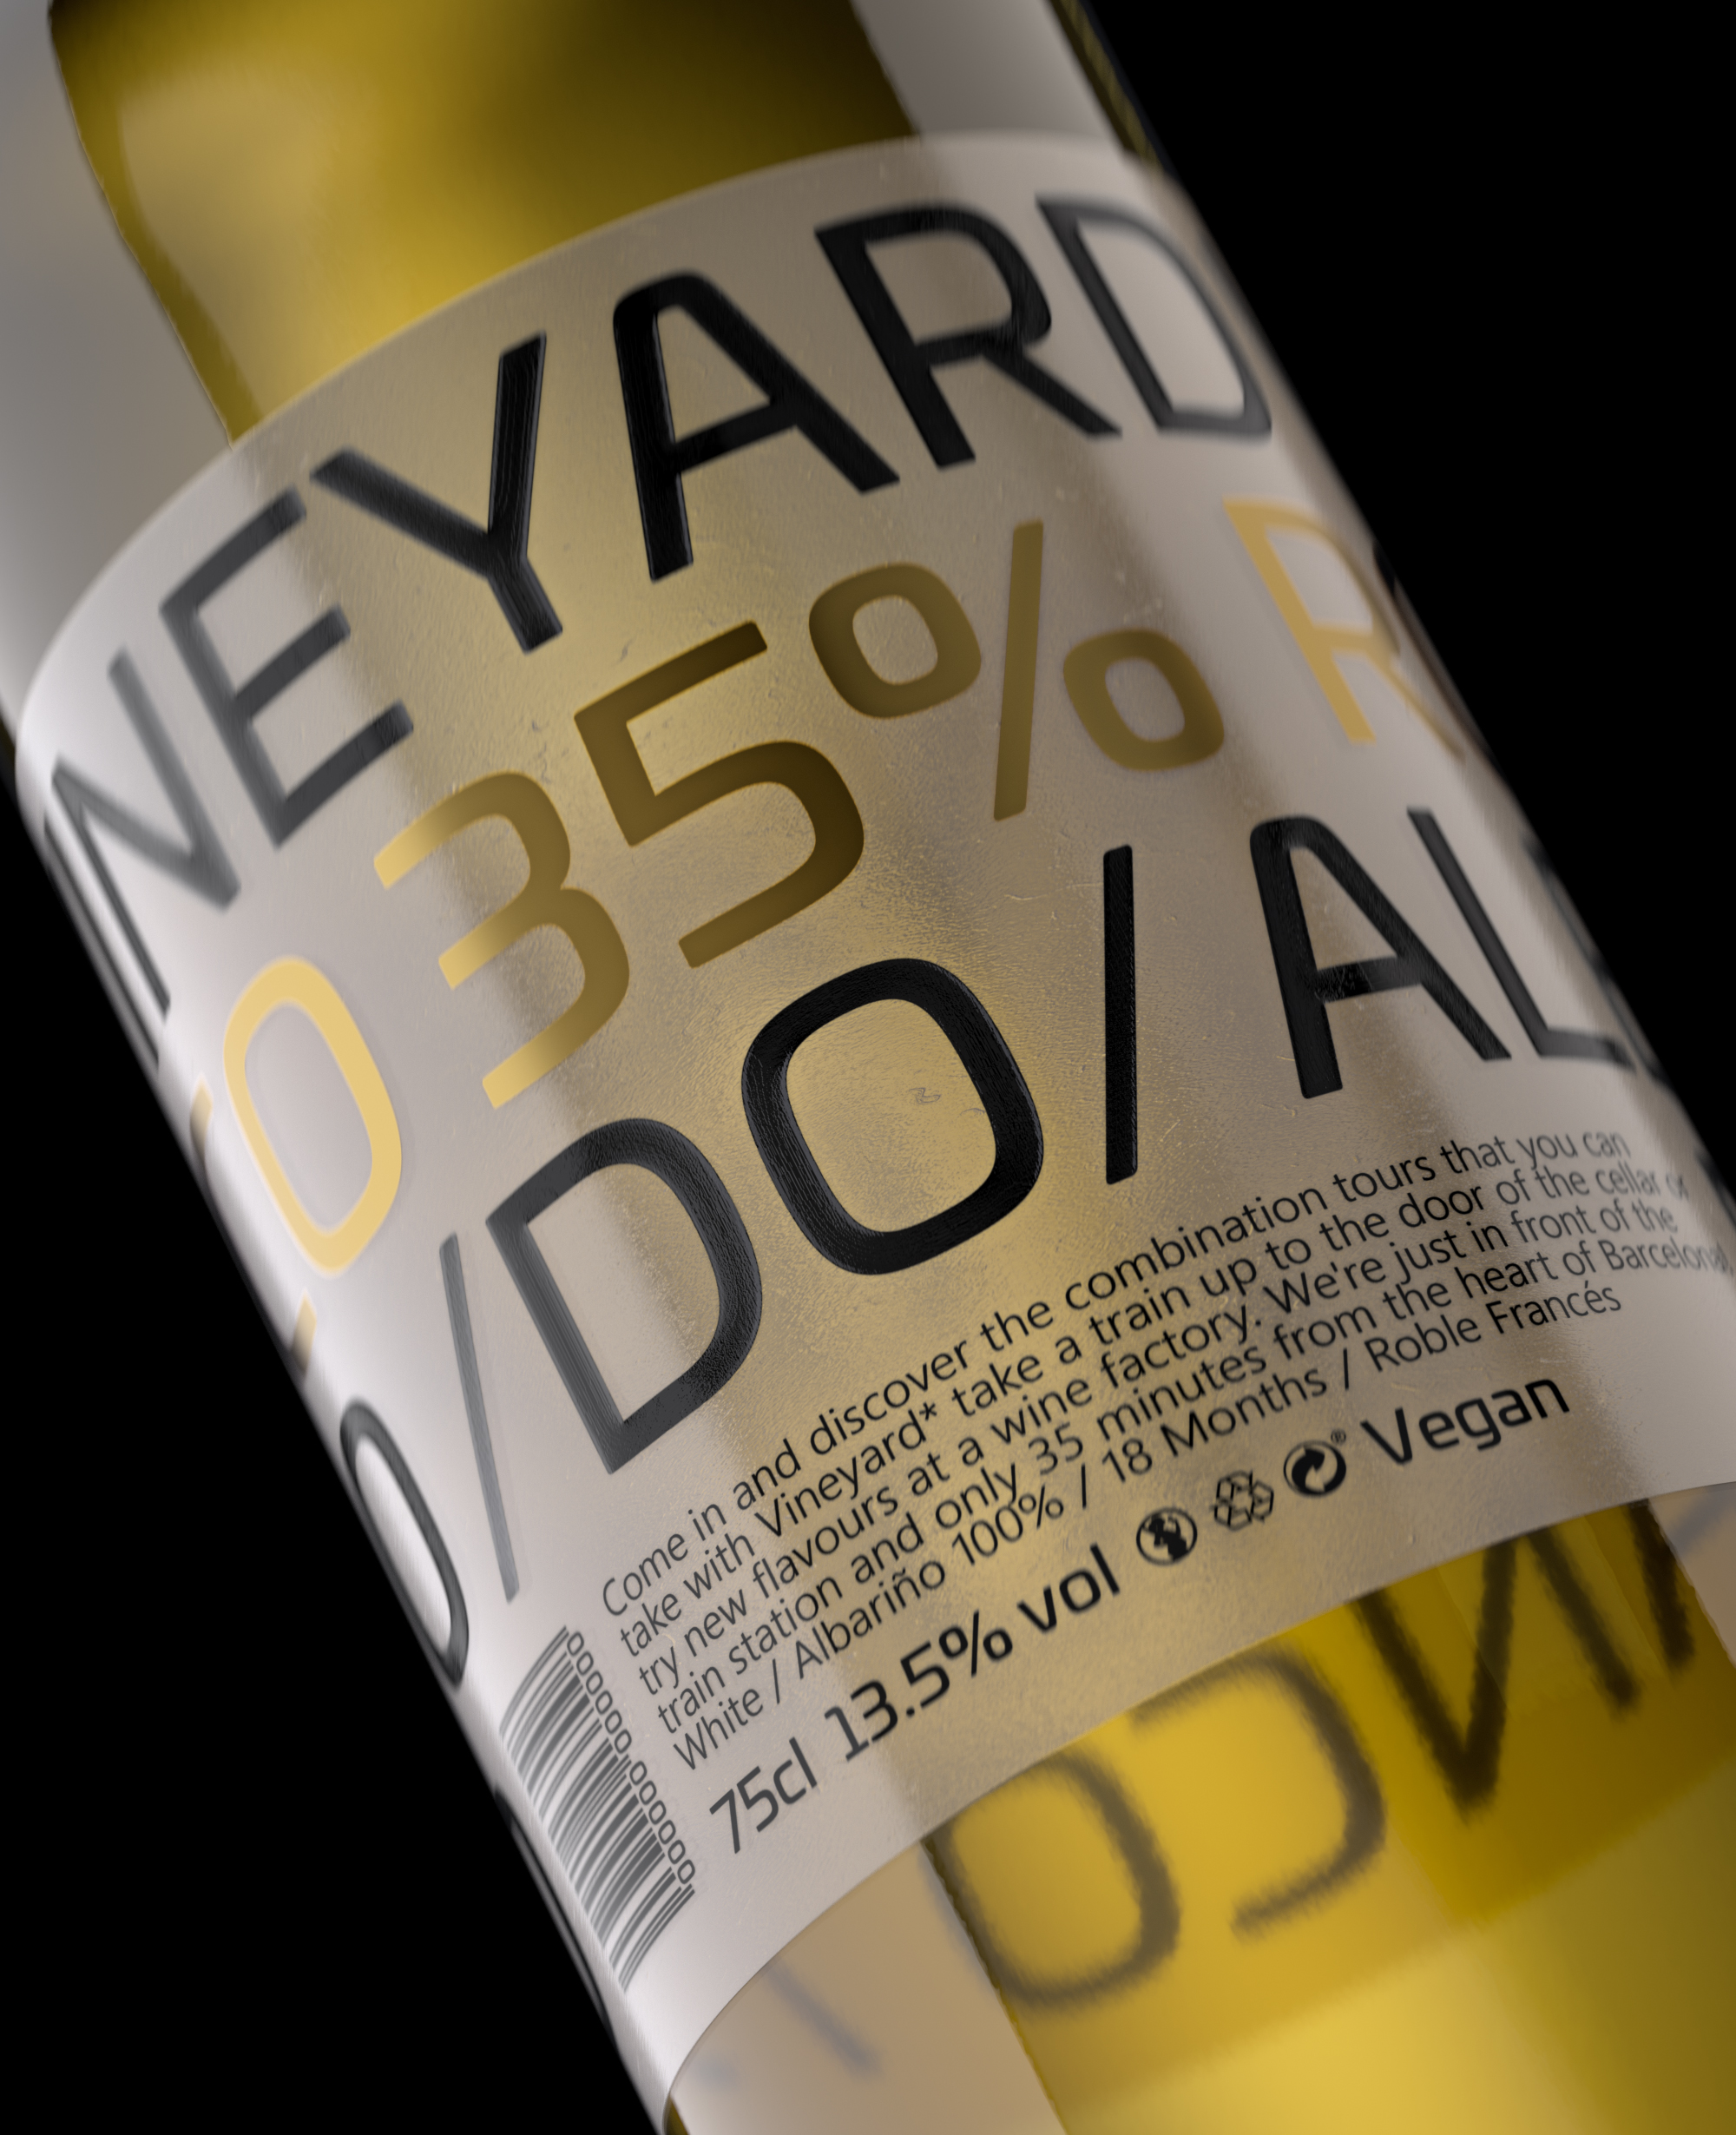 Design detail on a wine bottle - C4D